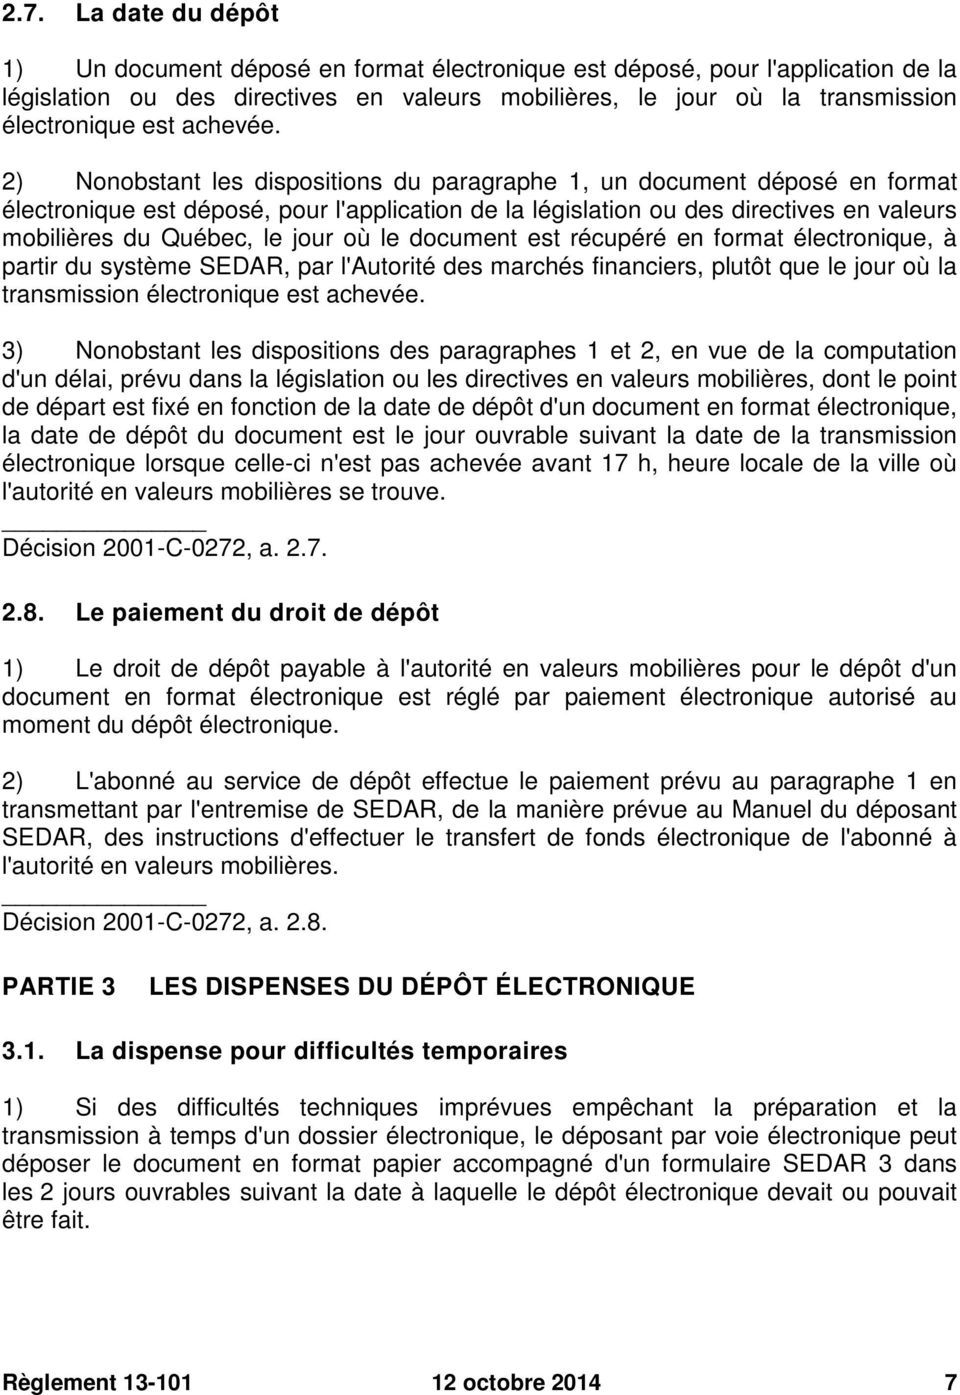 2) Nonobstant les dispositions du paragraphe 1, un document déposé en format électronique est déposé, pour l'application de la législation ou des directives en valeurs mobilières du Québec, le jour